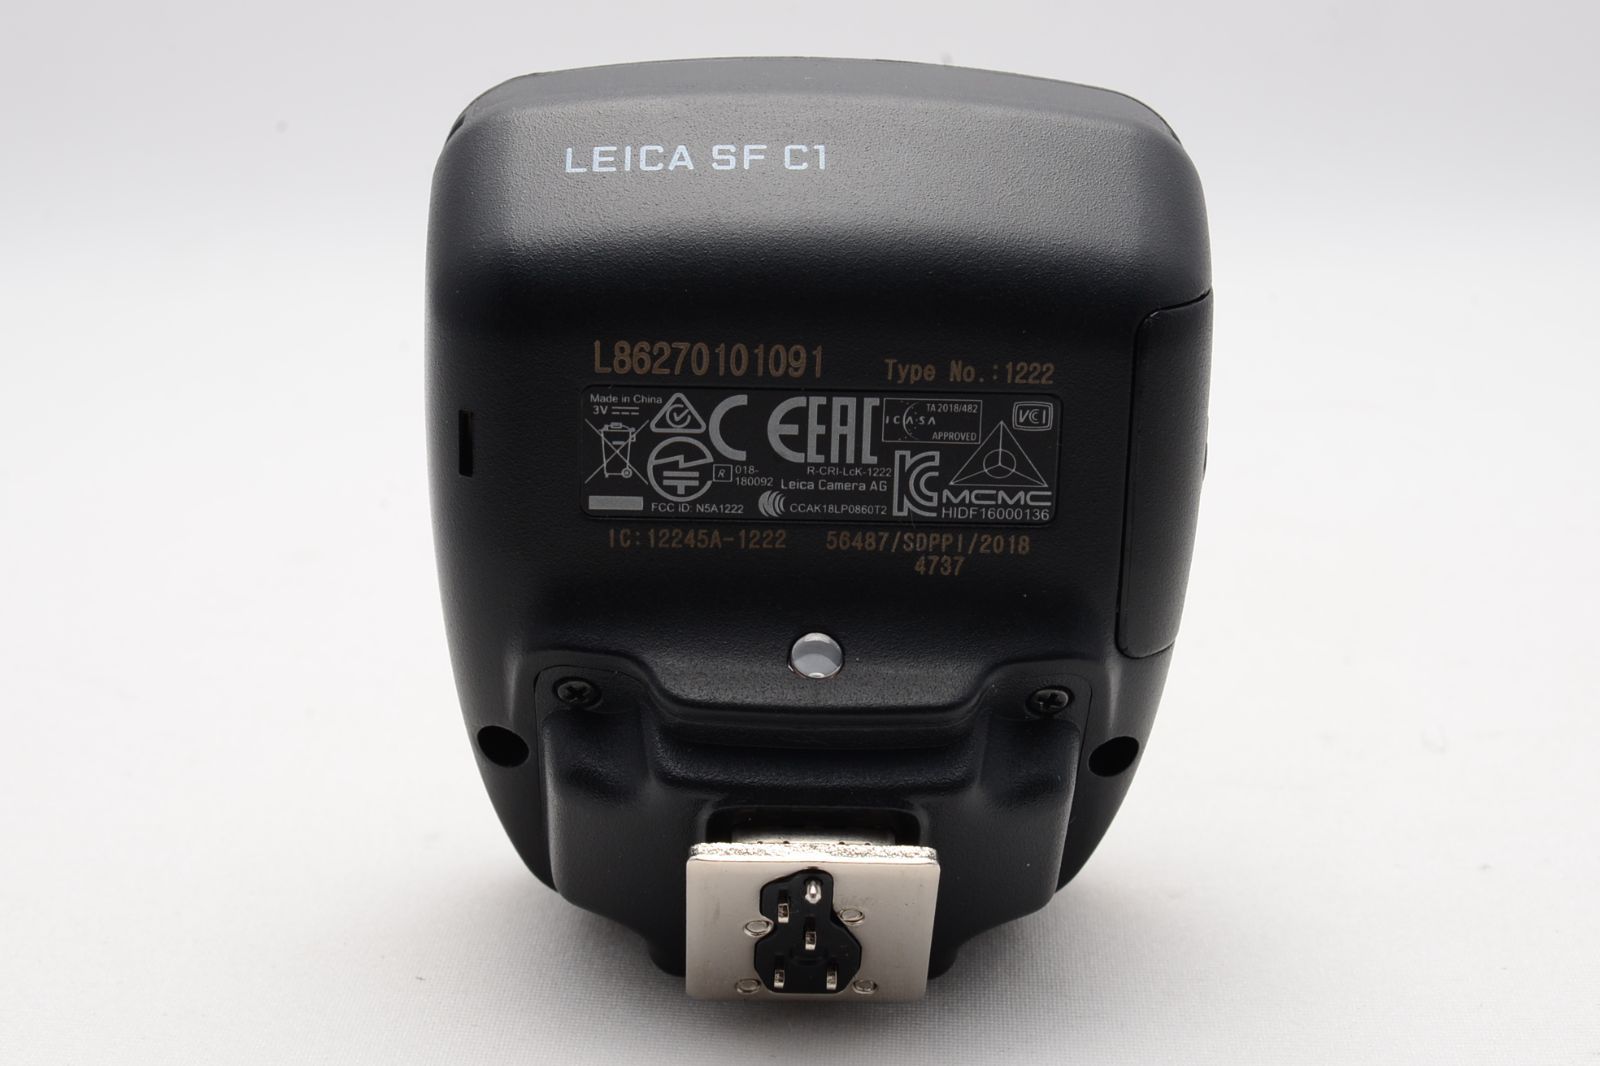 ライカ Leica SF C1 リモートコマンダー グッチーカメラ メルカリ